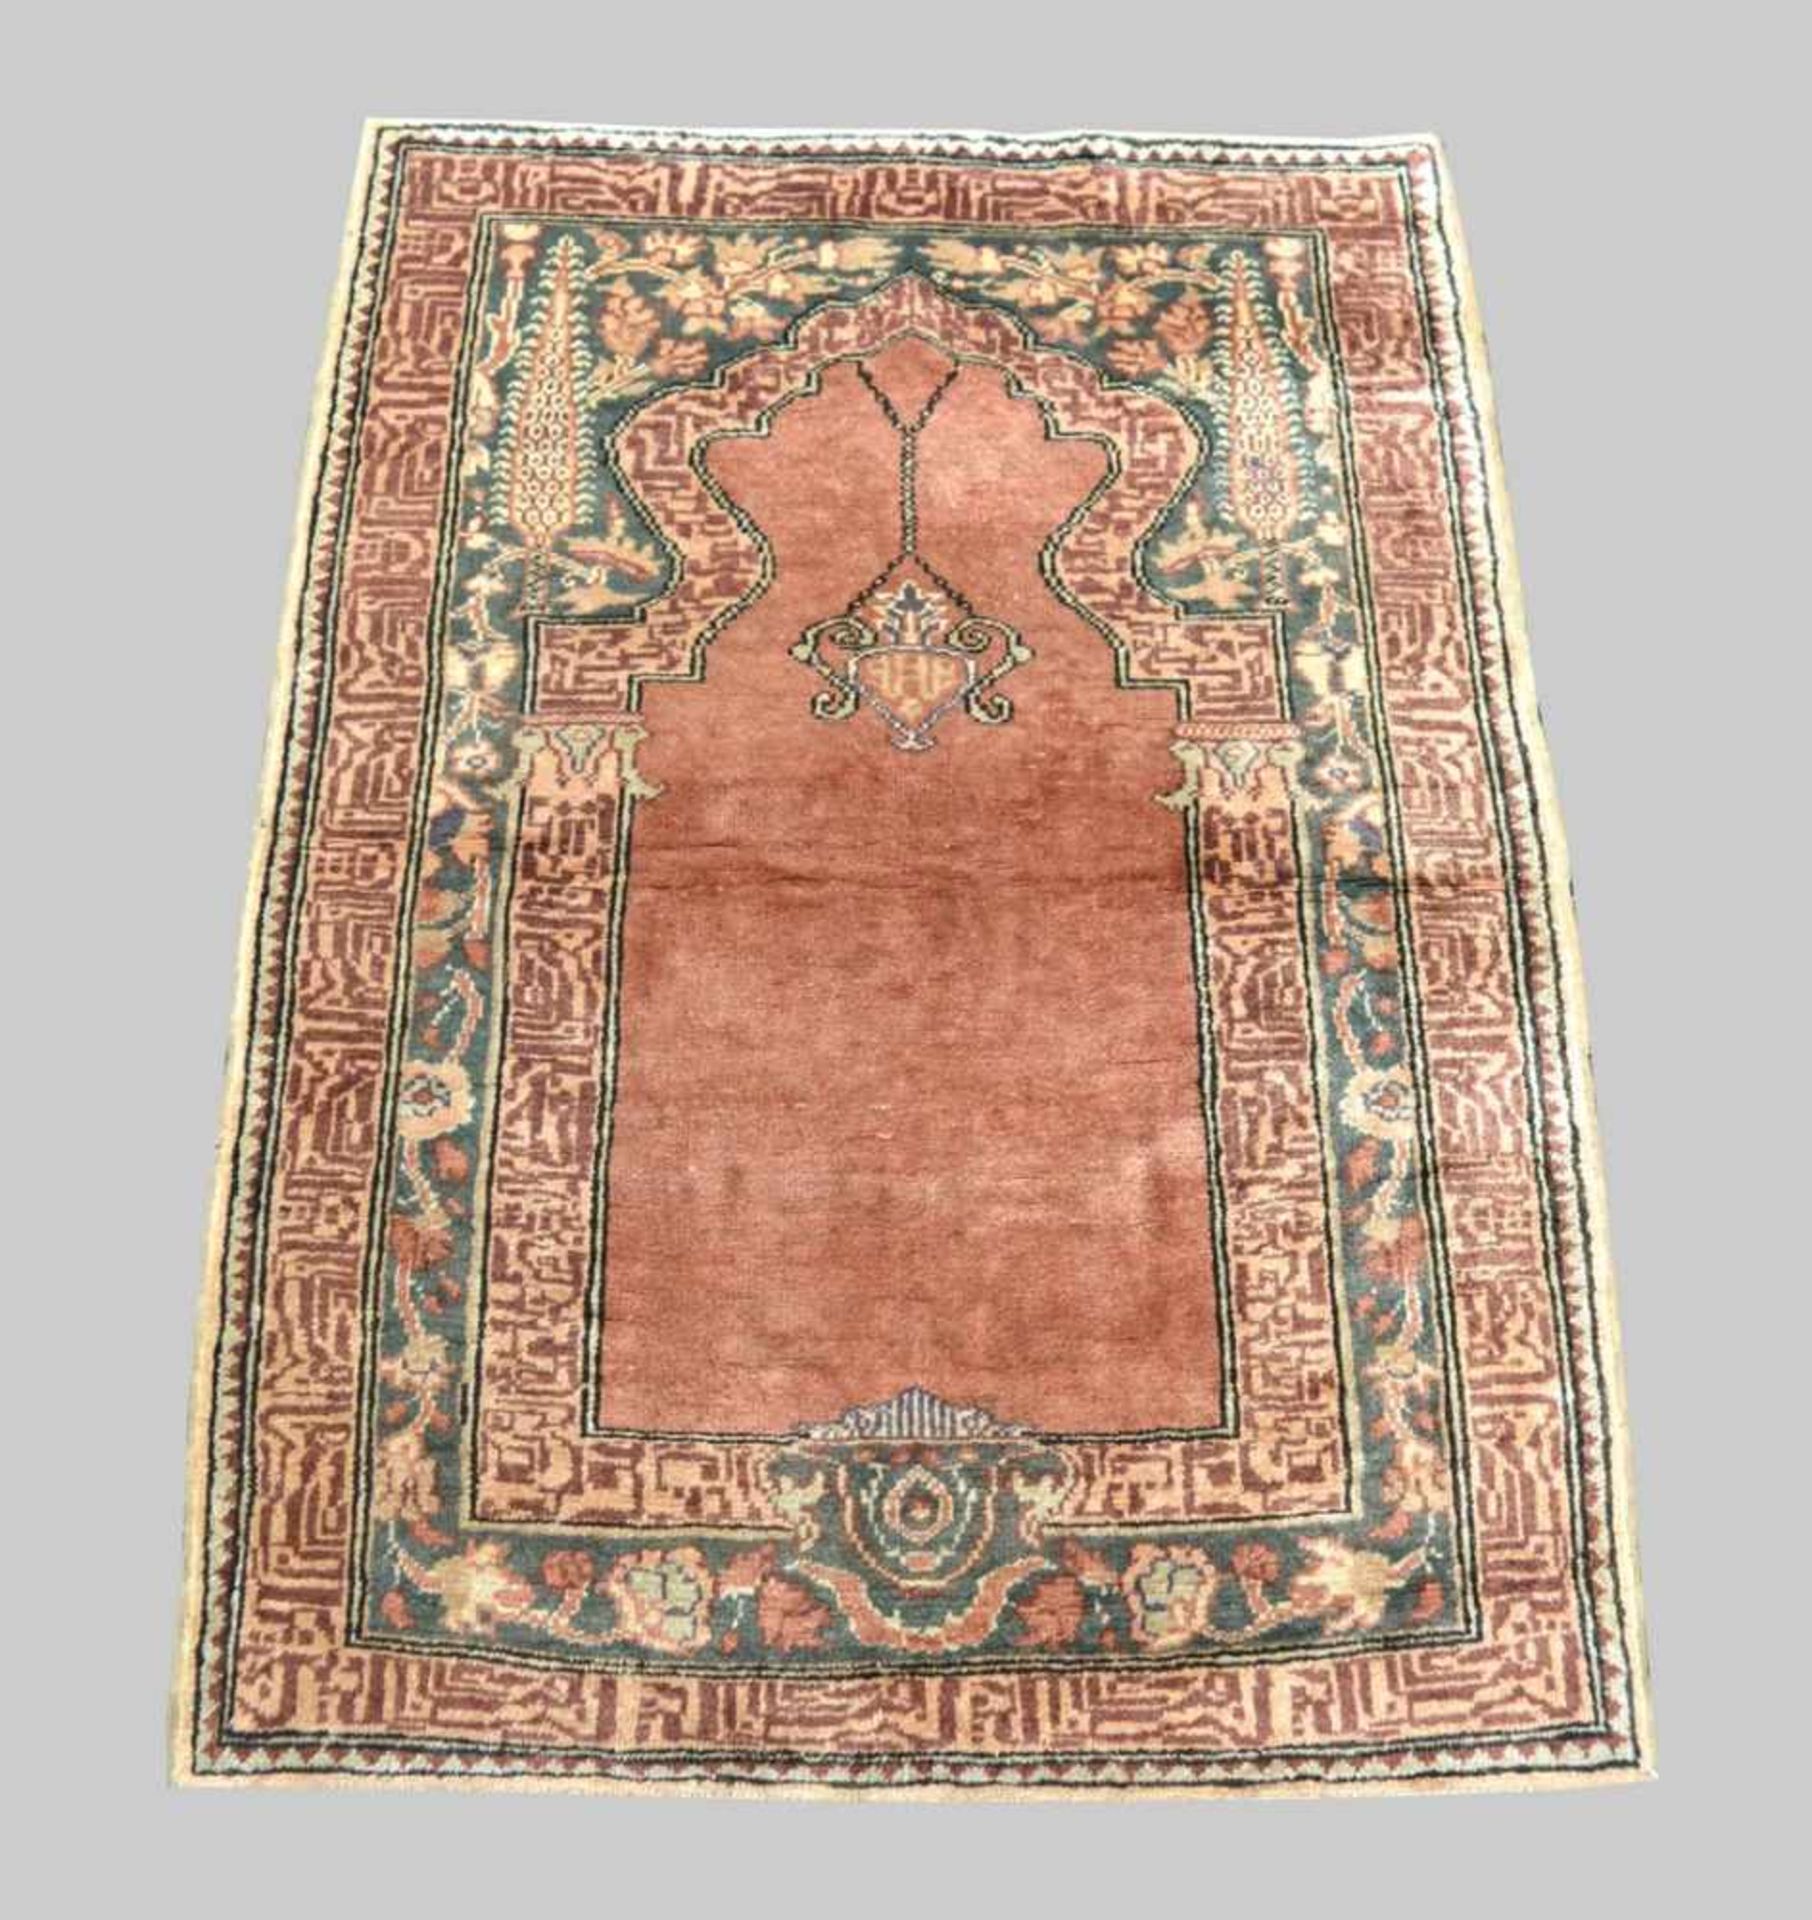 Seiden-Gebets-Teppich Türkei, 72 X 100 cm, 0,72 qm